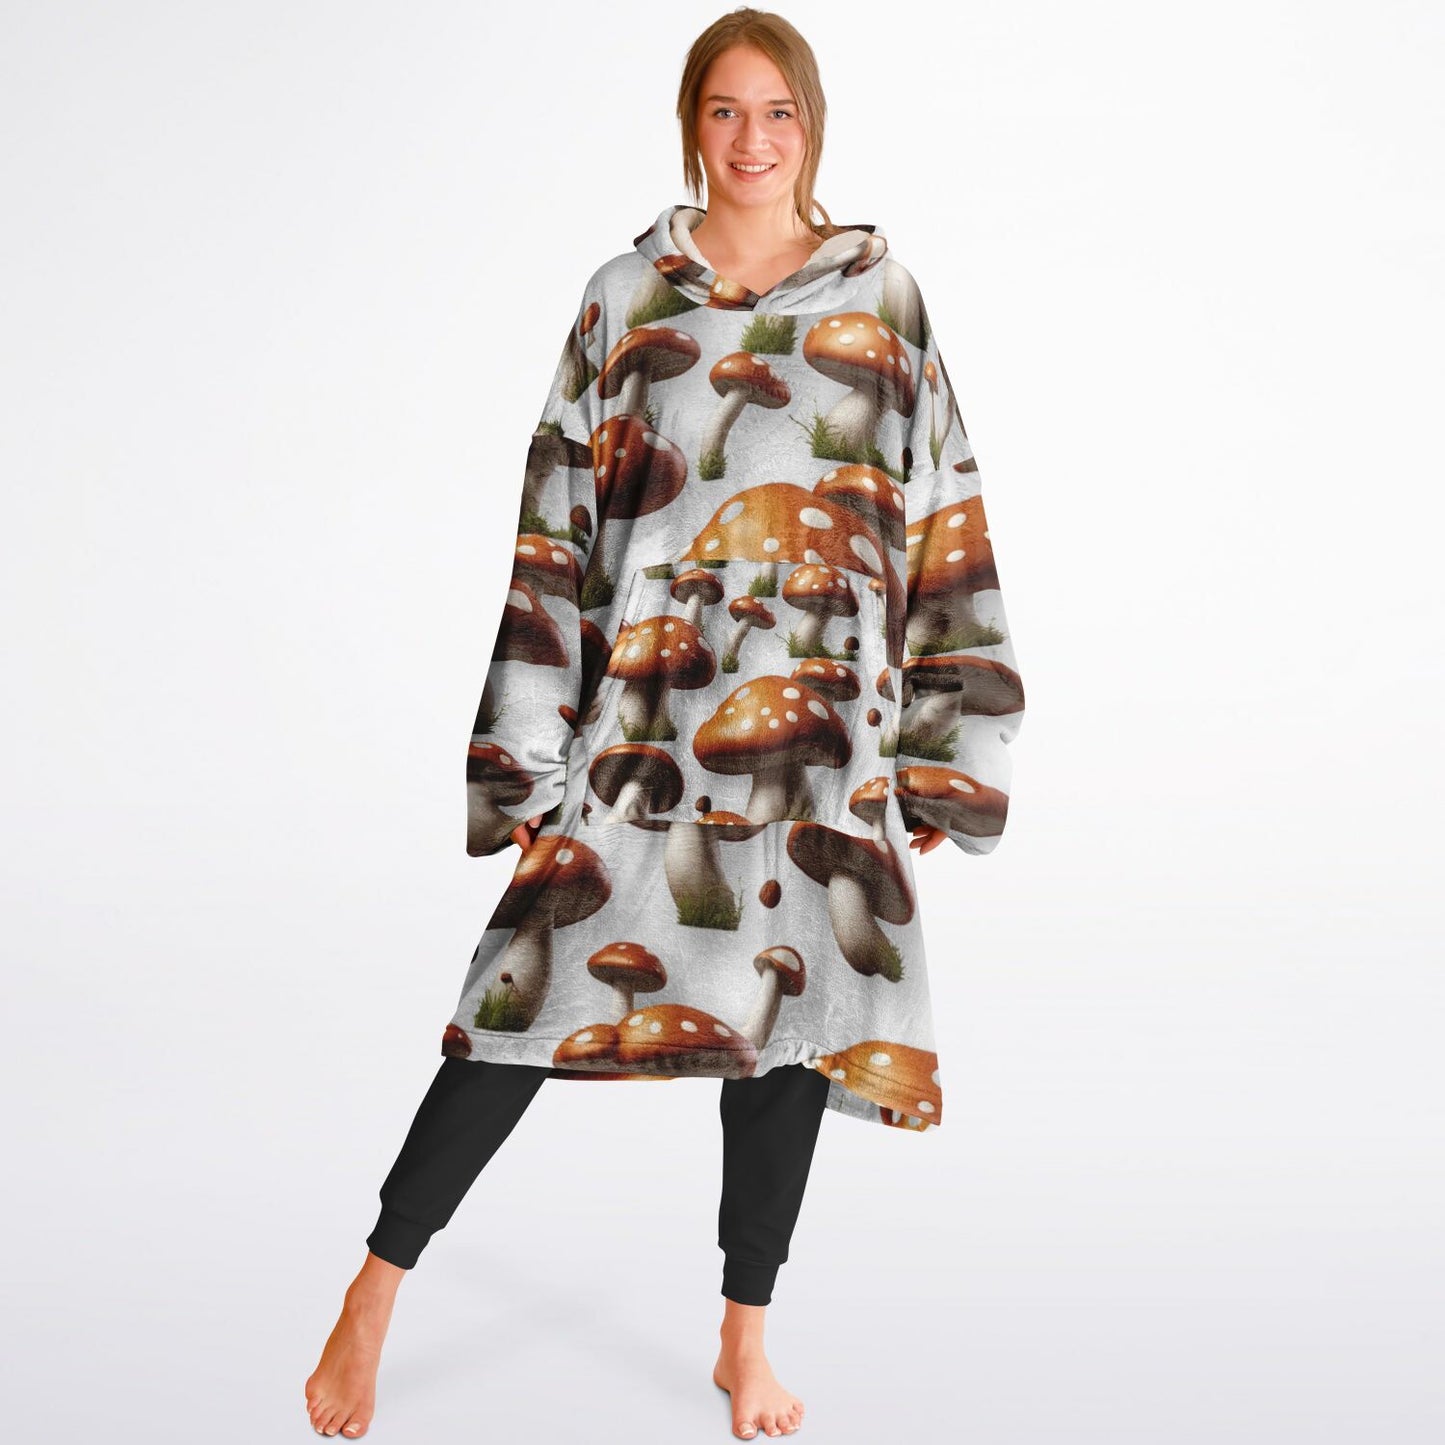 Kozy Komfort Mushroom Blanket Hoodie